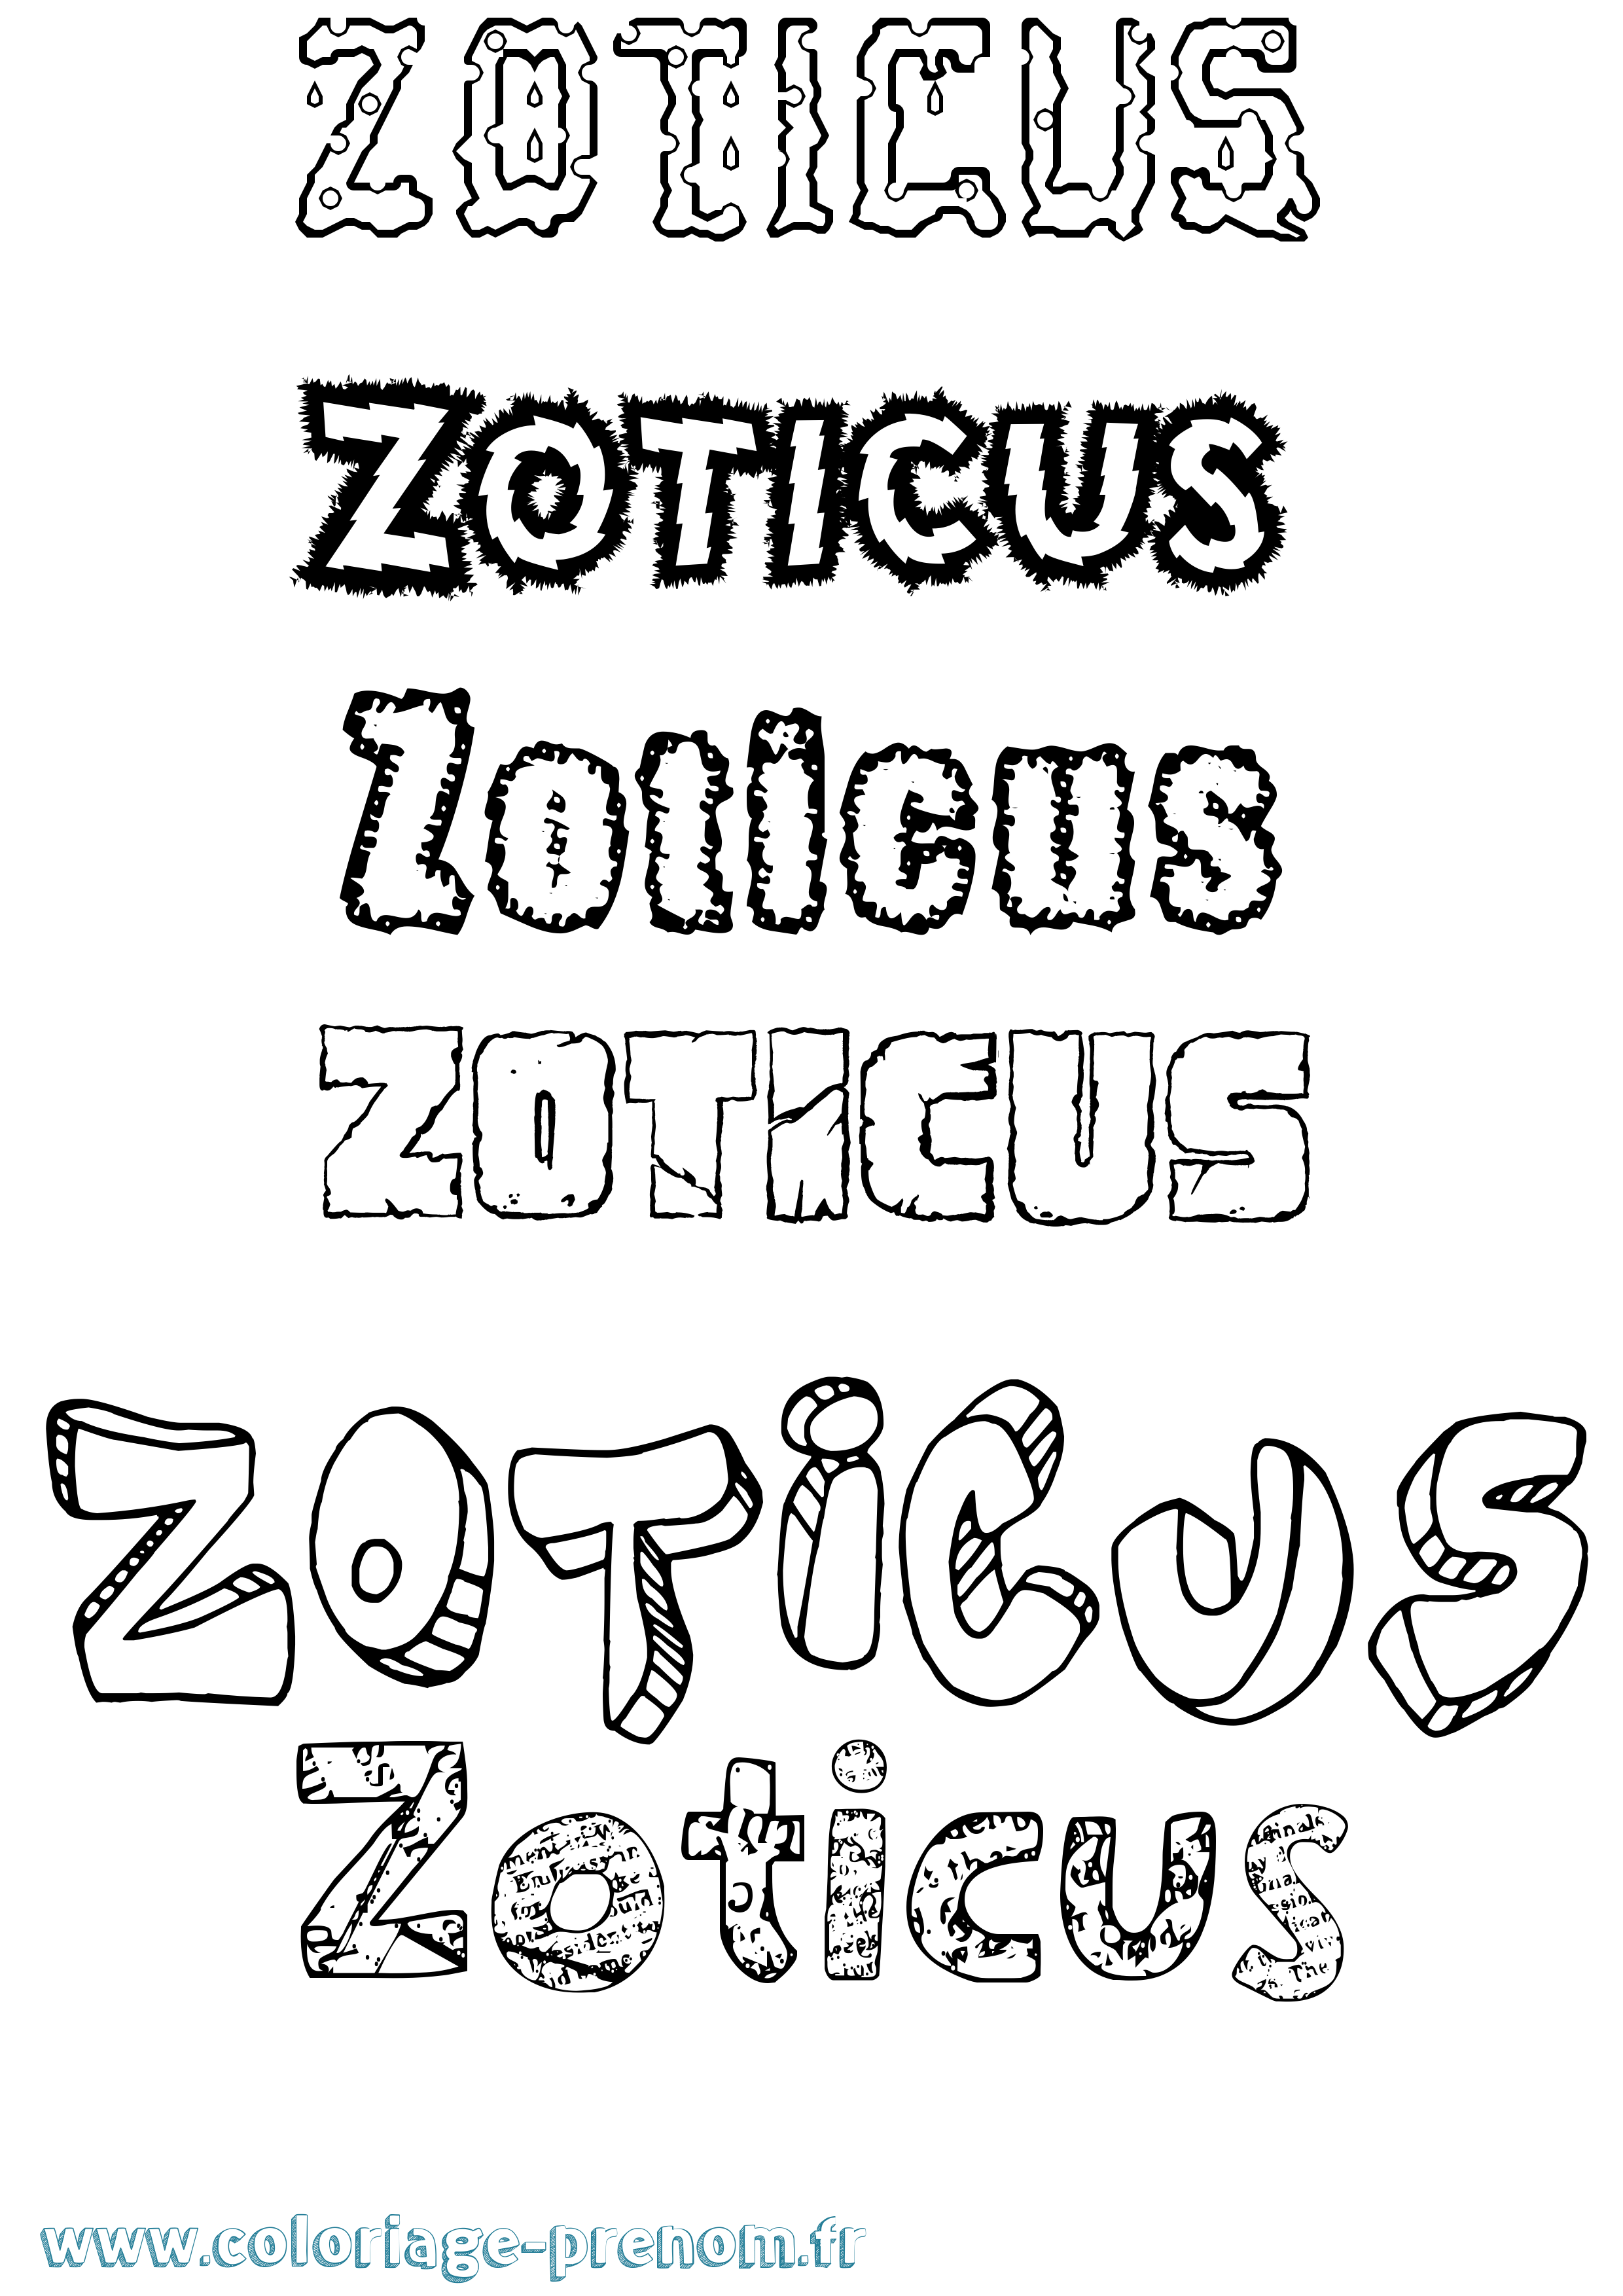 Coloriage prénom Zoticus Destructuré